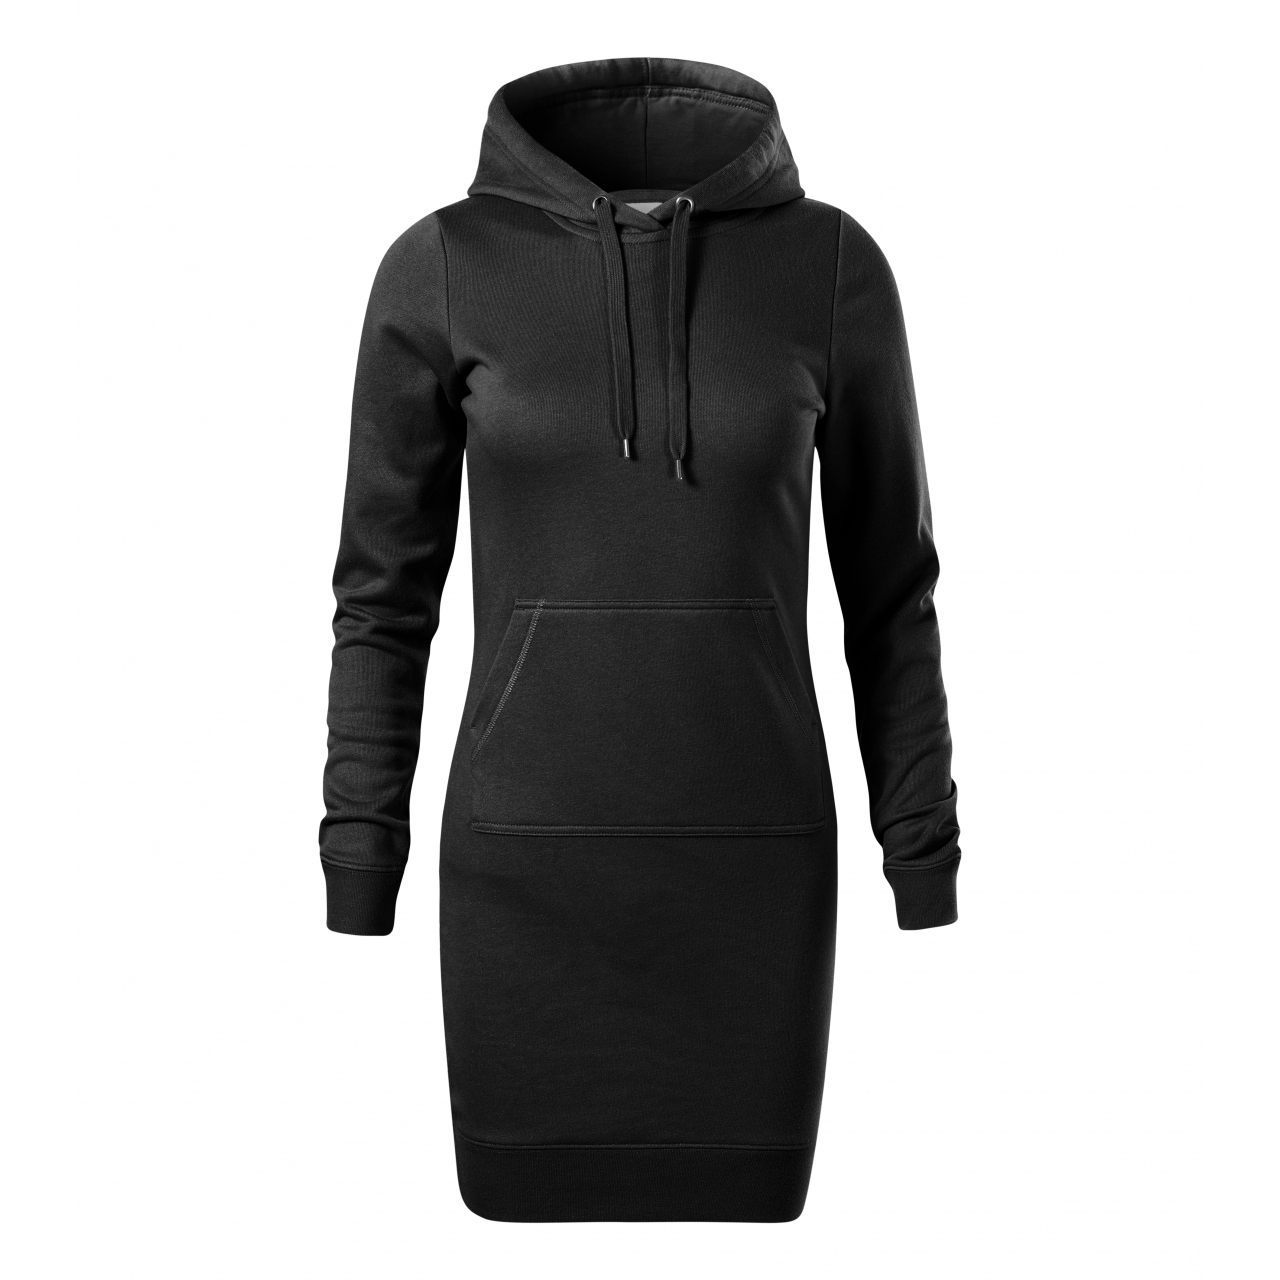 Šaty dámské Malfini Snap - černé, XXL